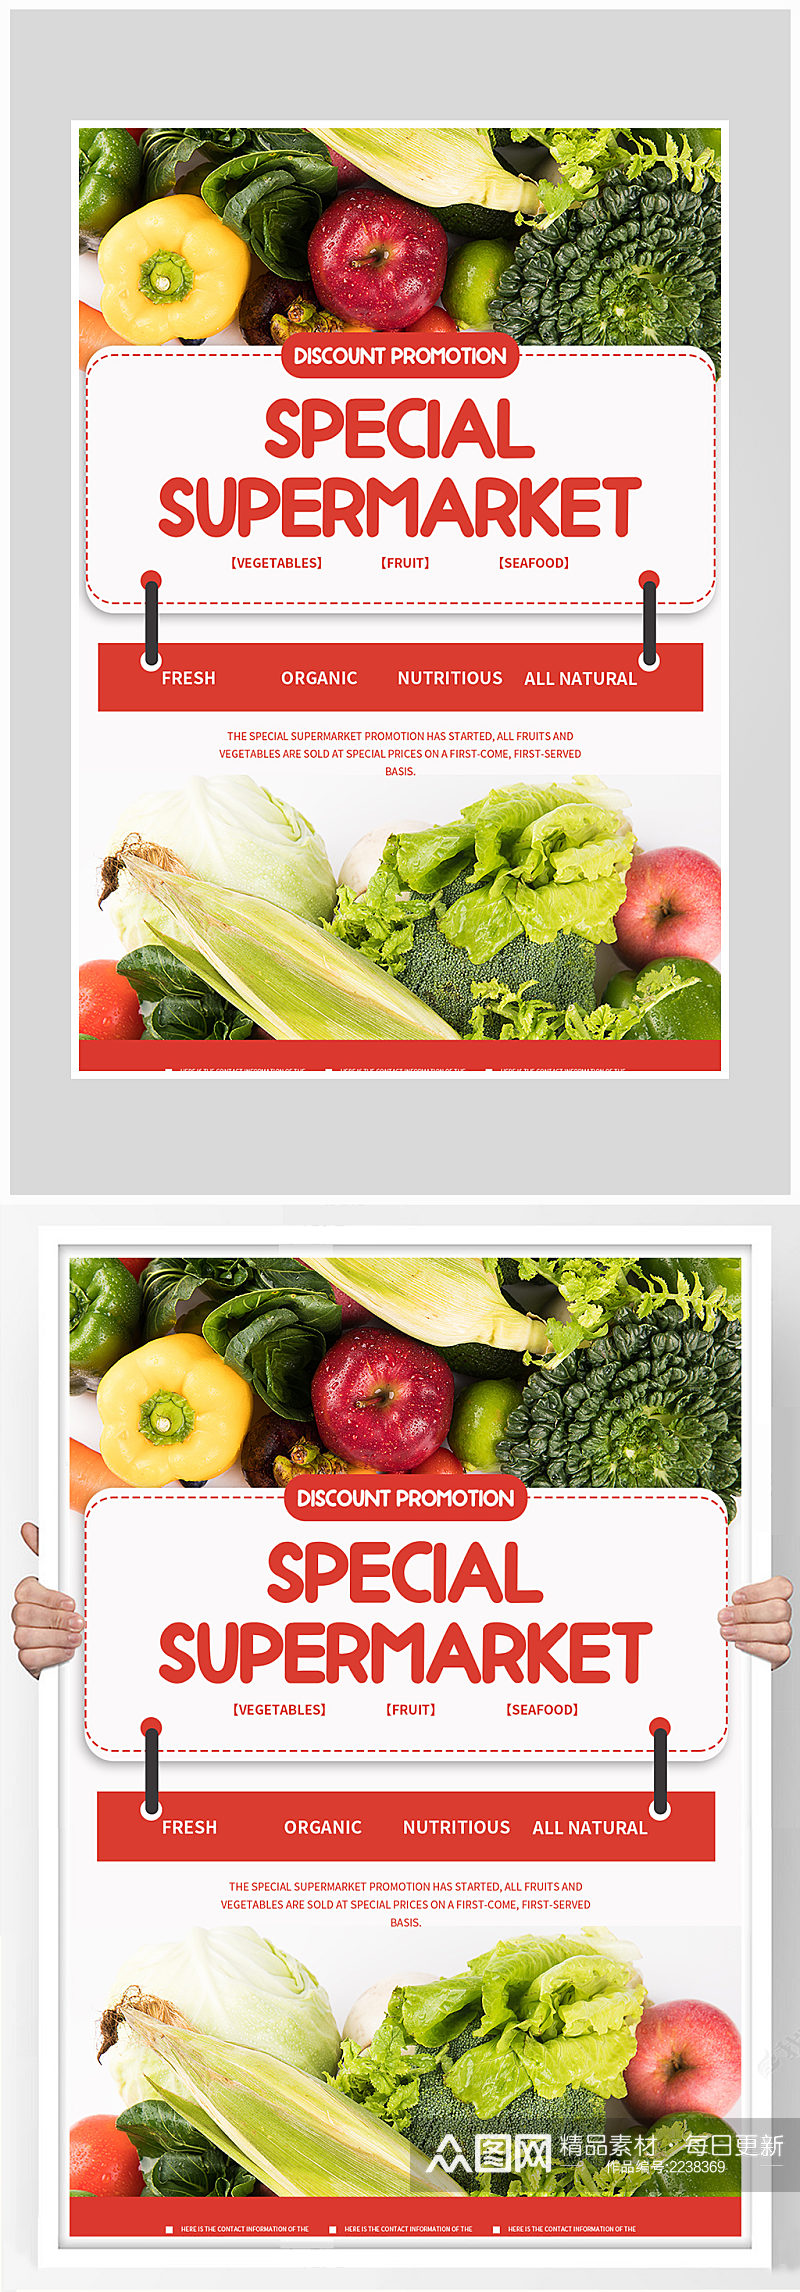 创意大气简约超市蔬菜打折海报设计素材